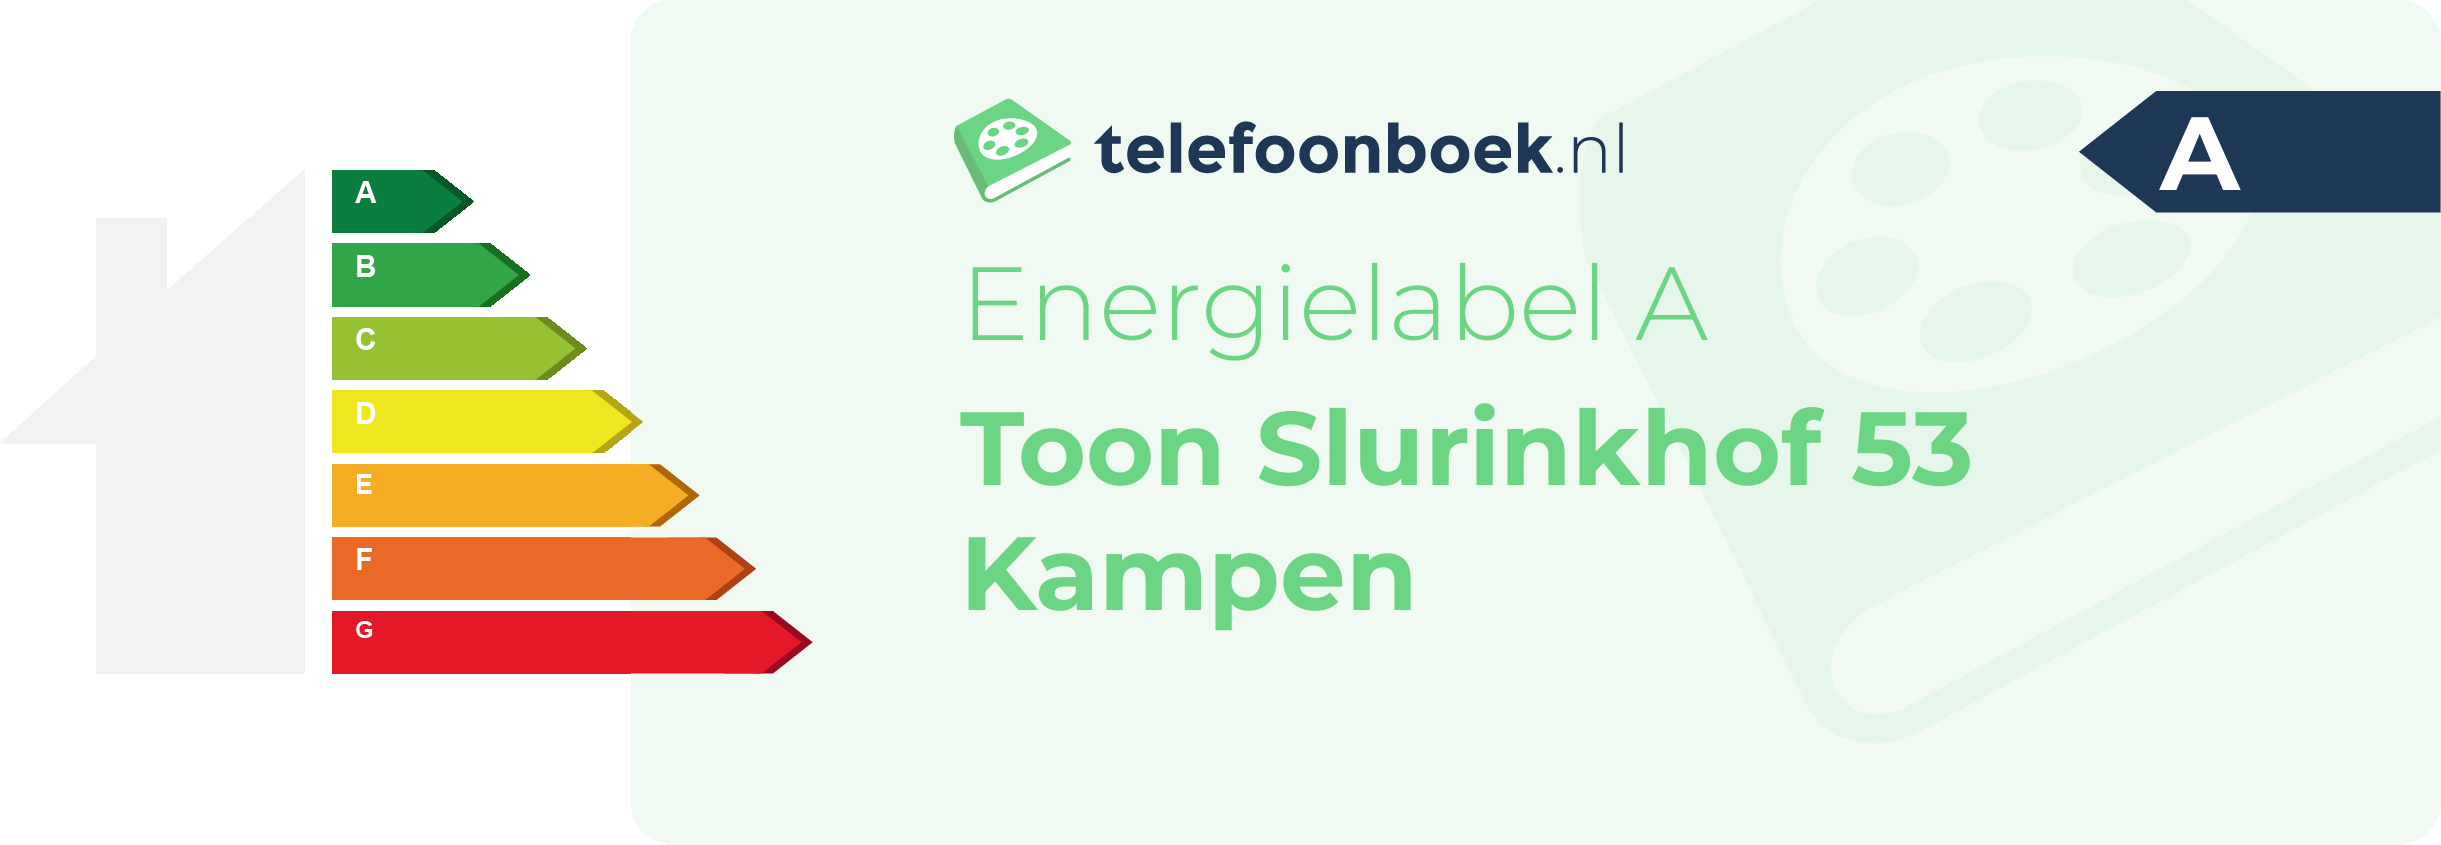 Energielabel Toon Slurinkhof 53 Kampen